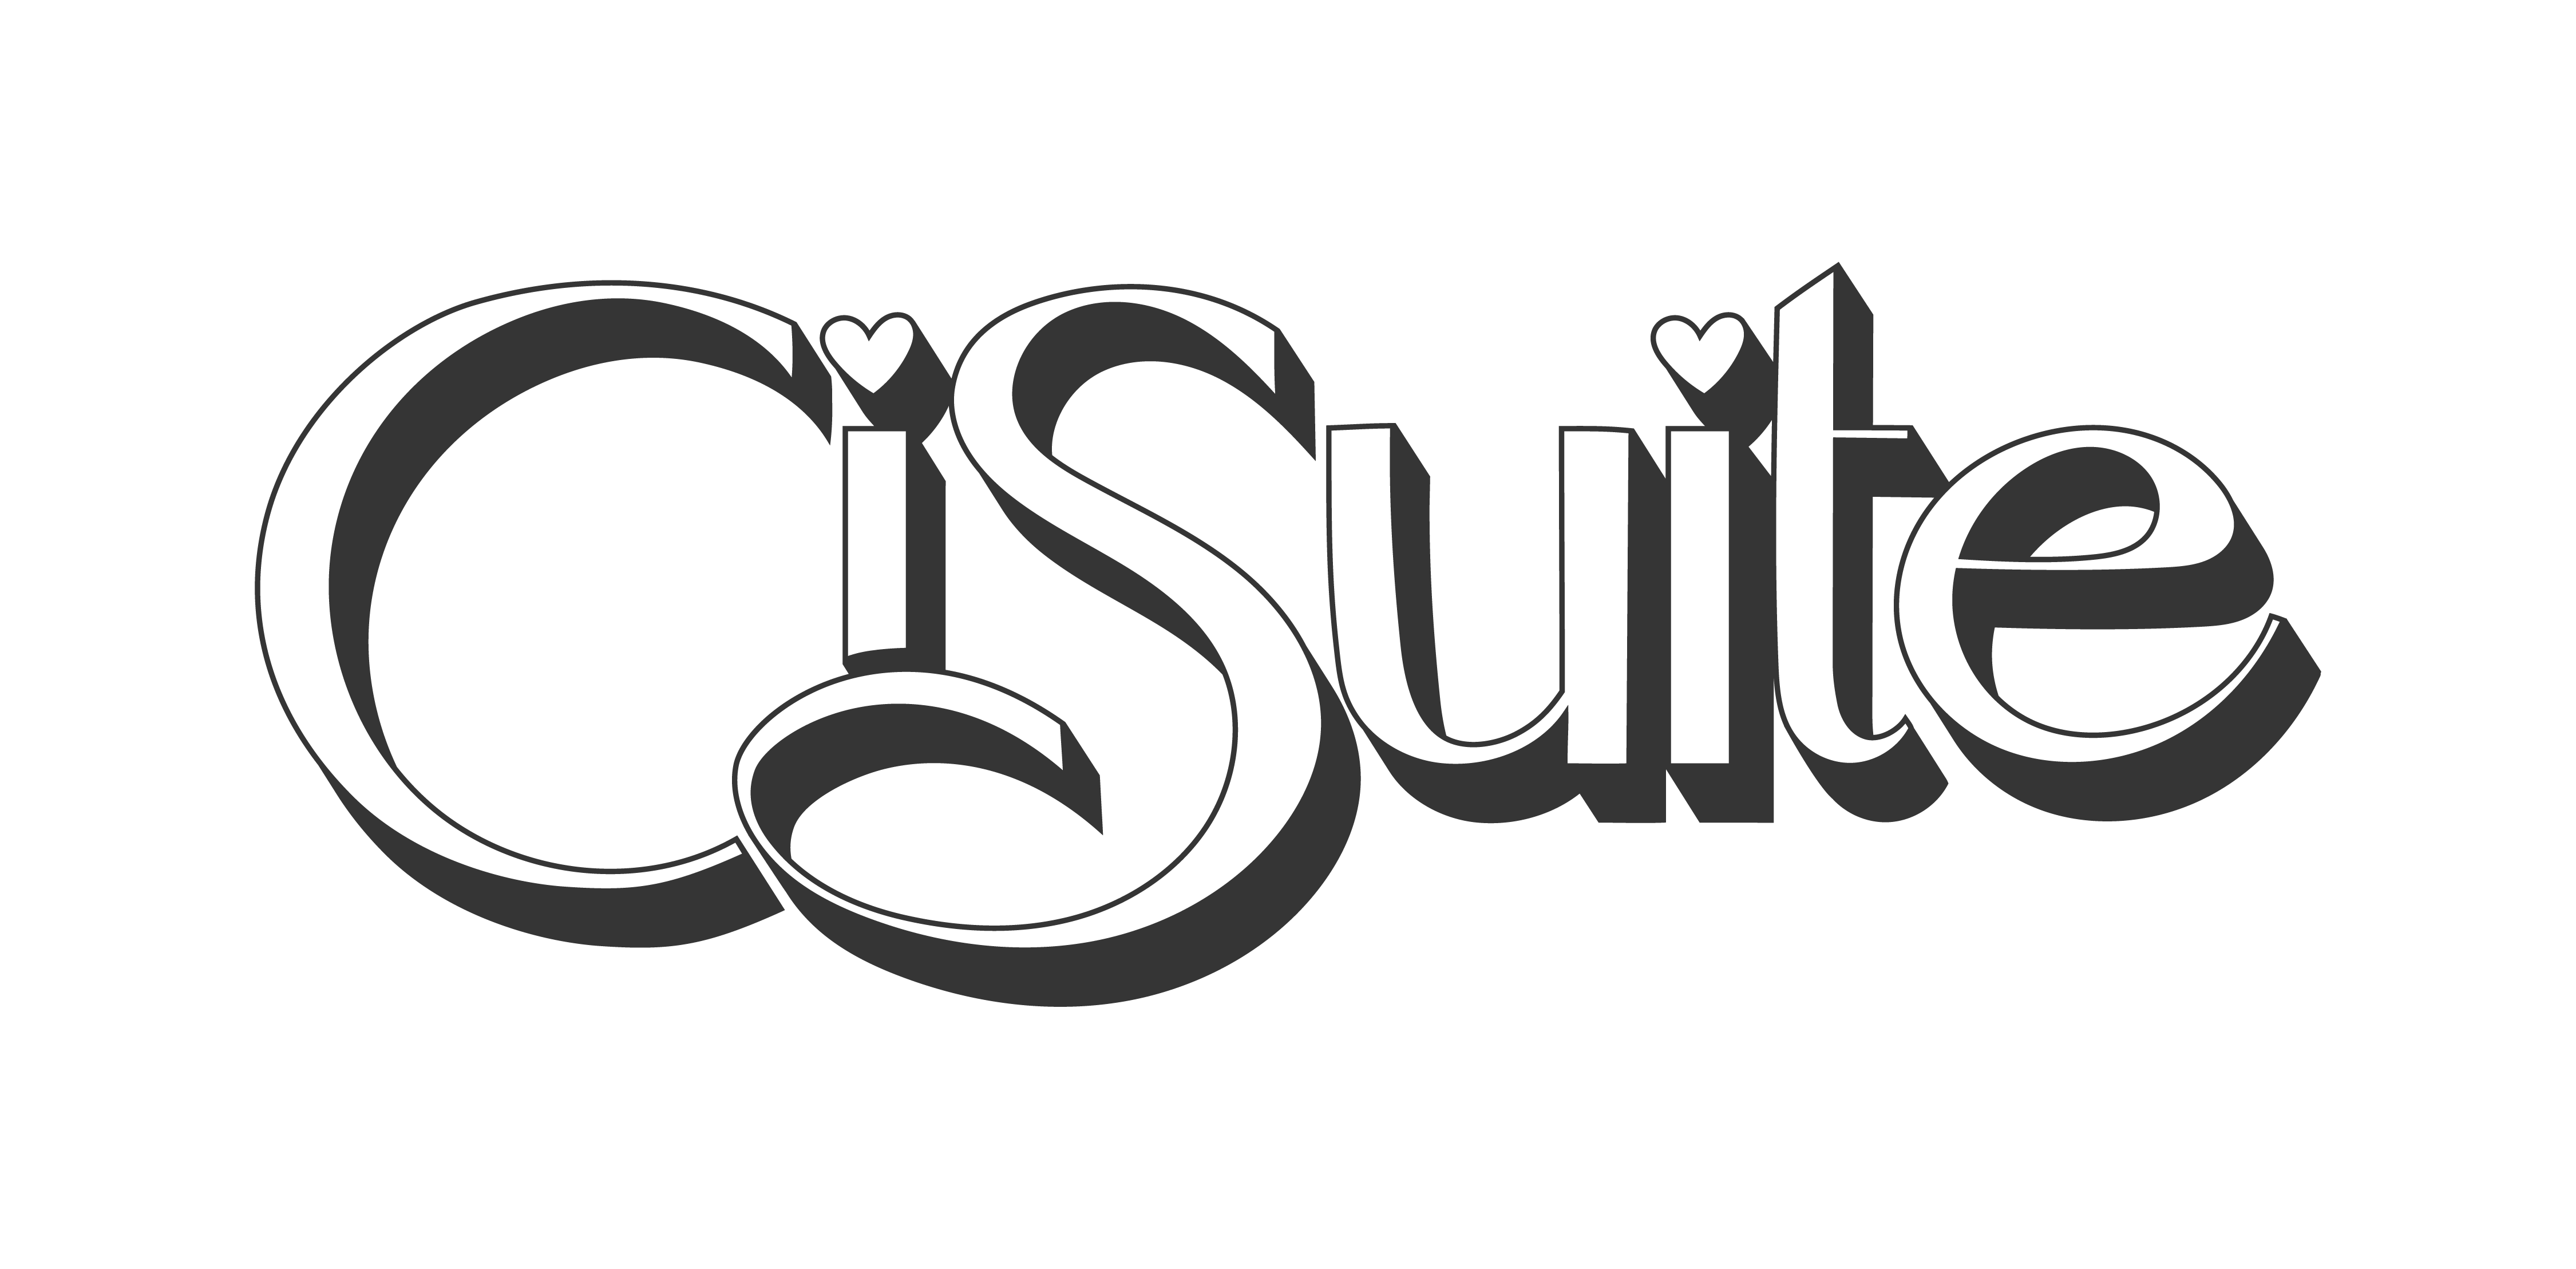 CiSuite, LLC